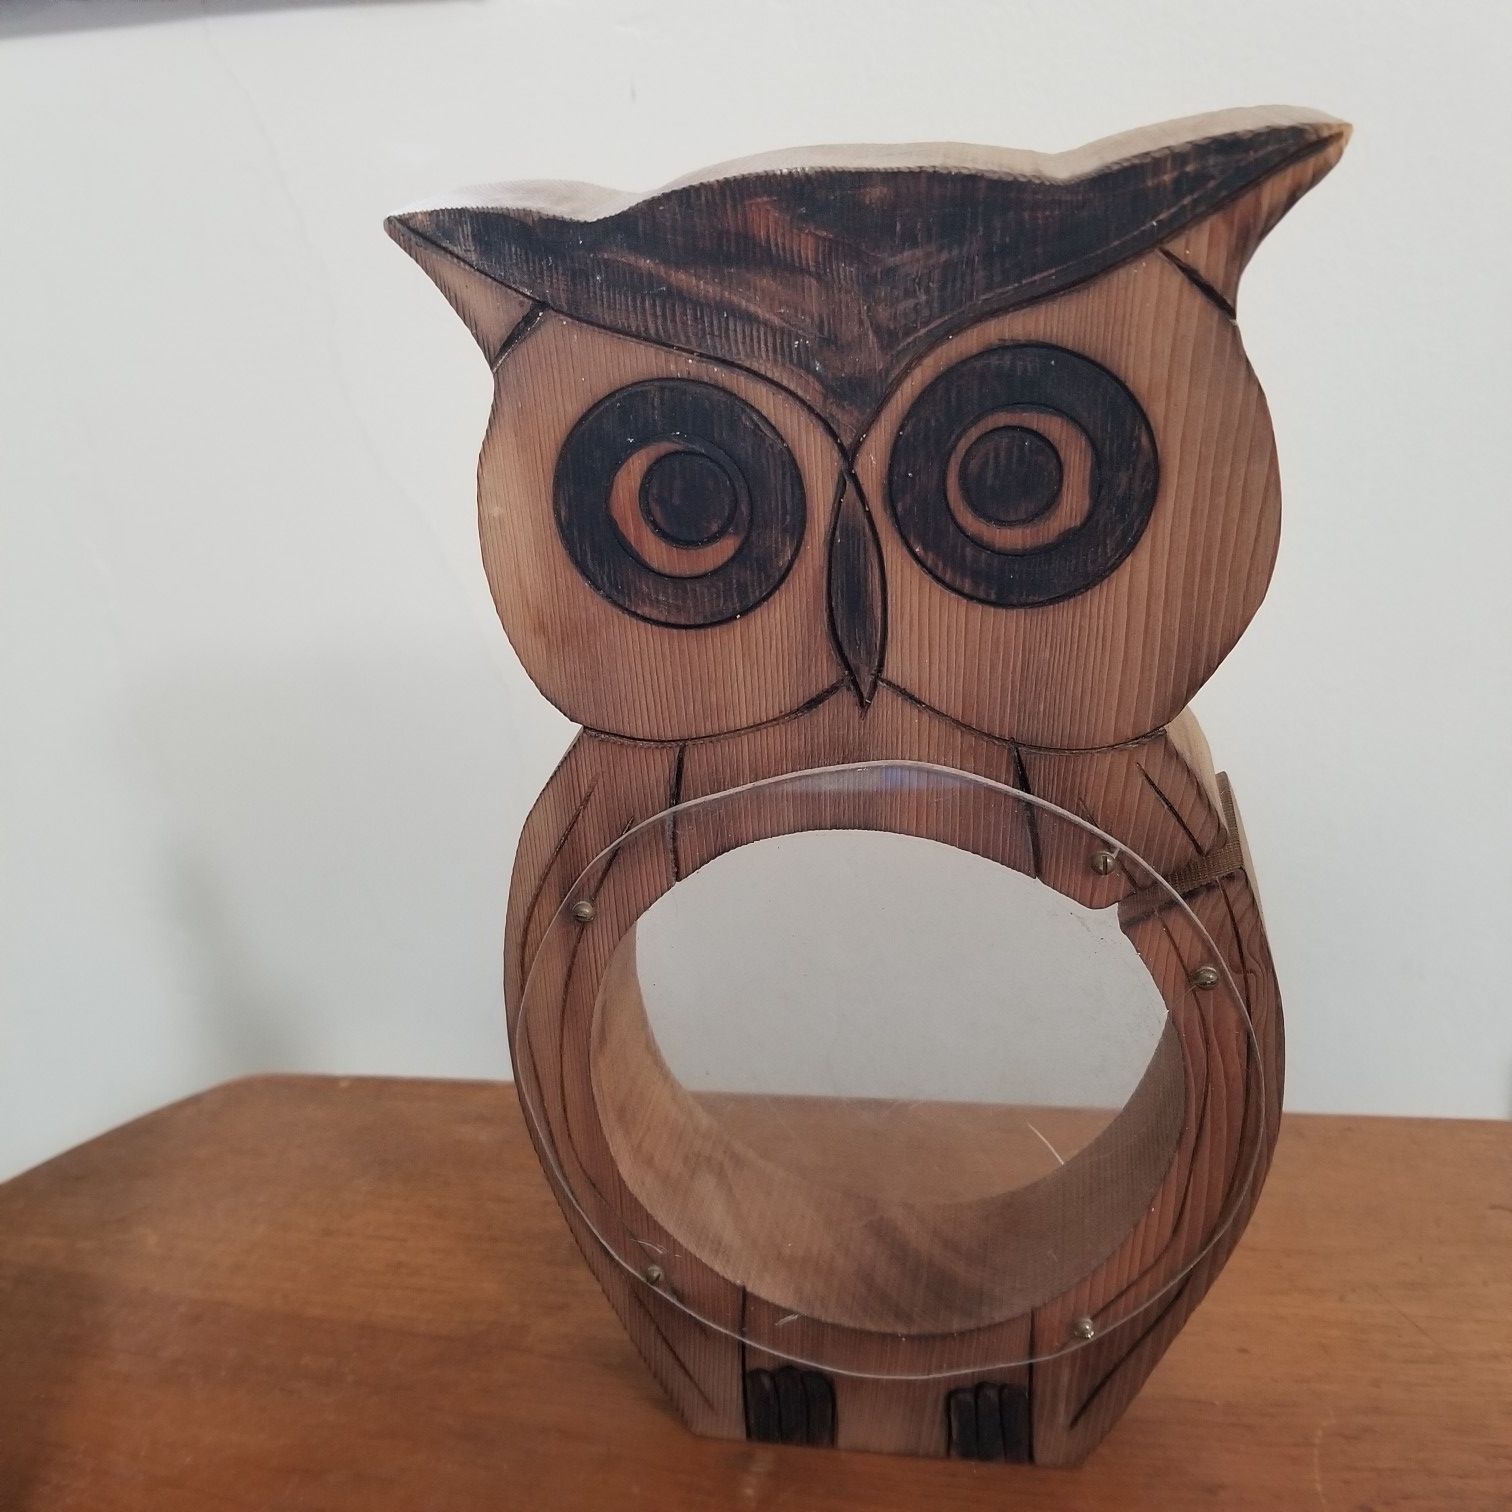 Wooden Owl Coin Bank